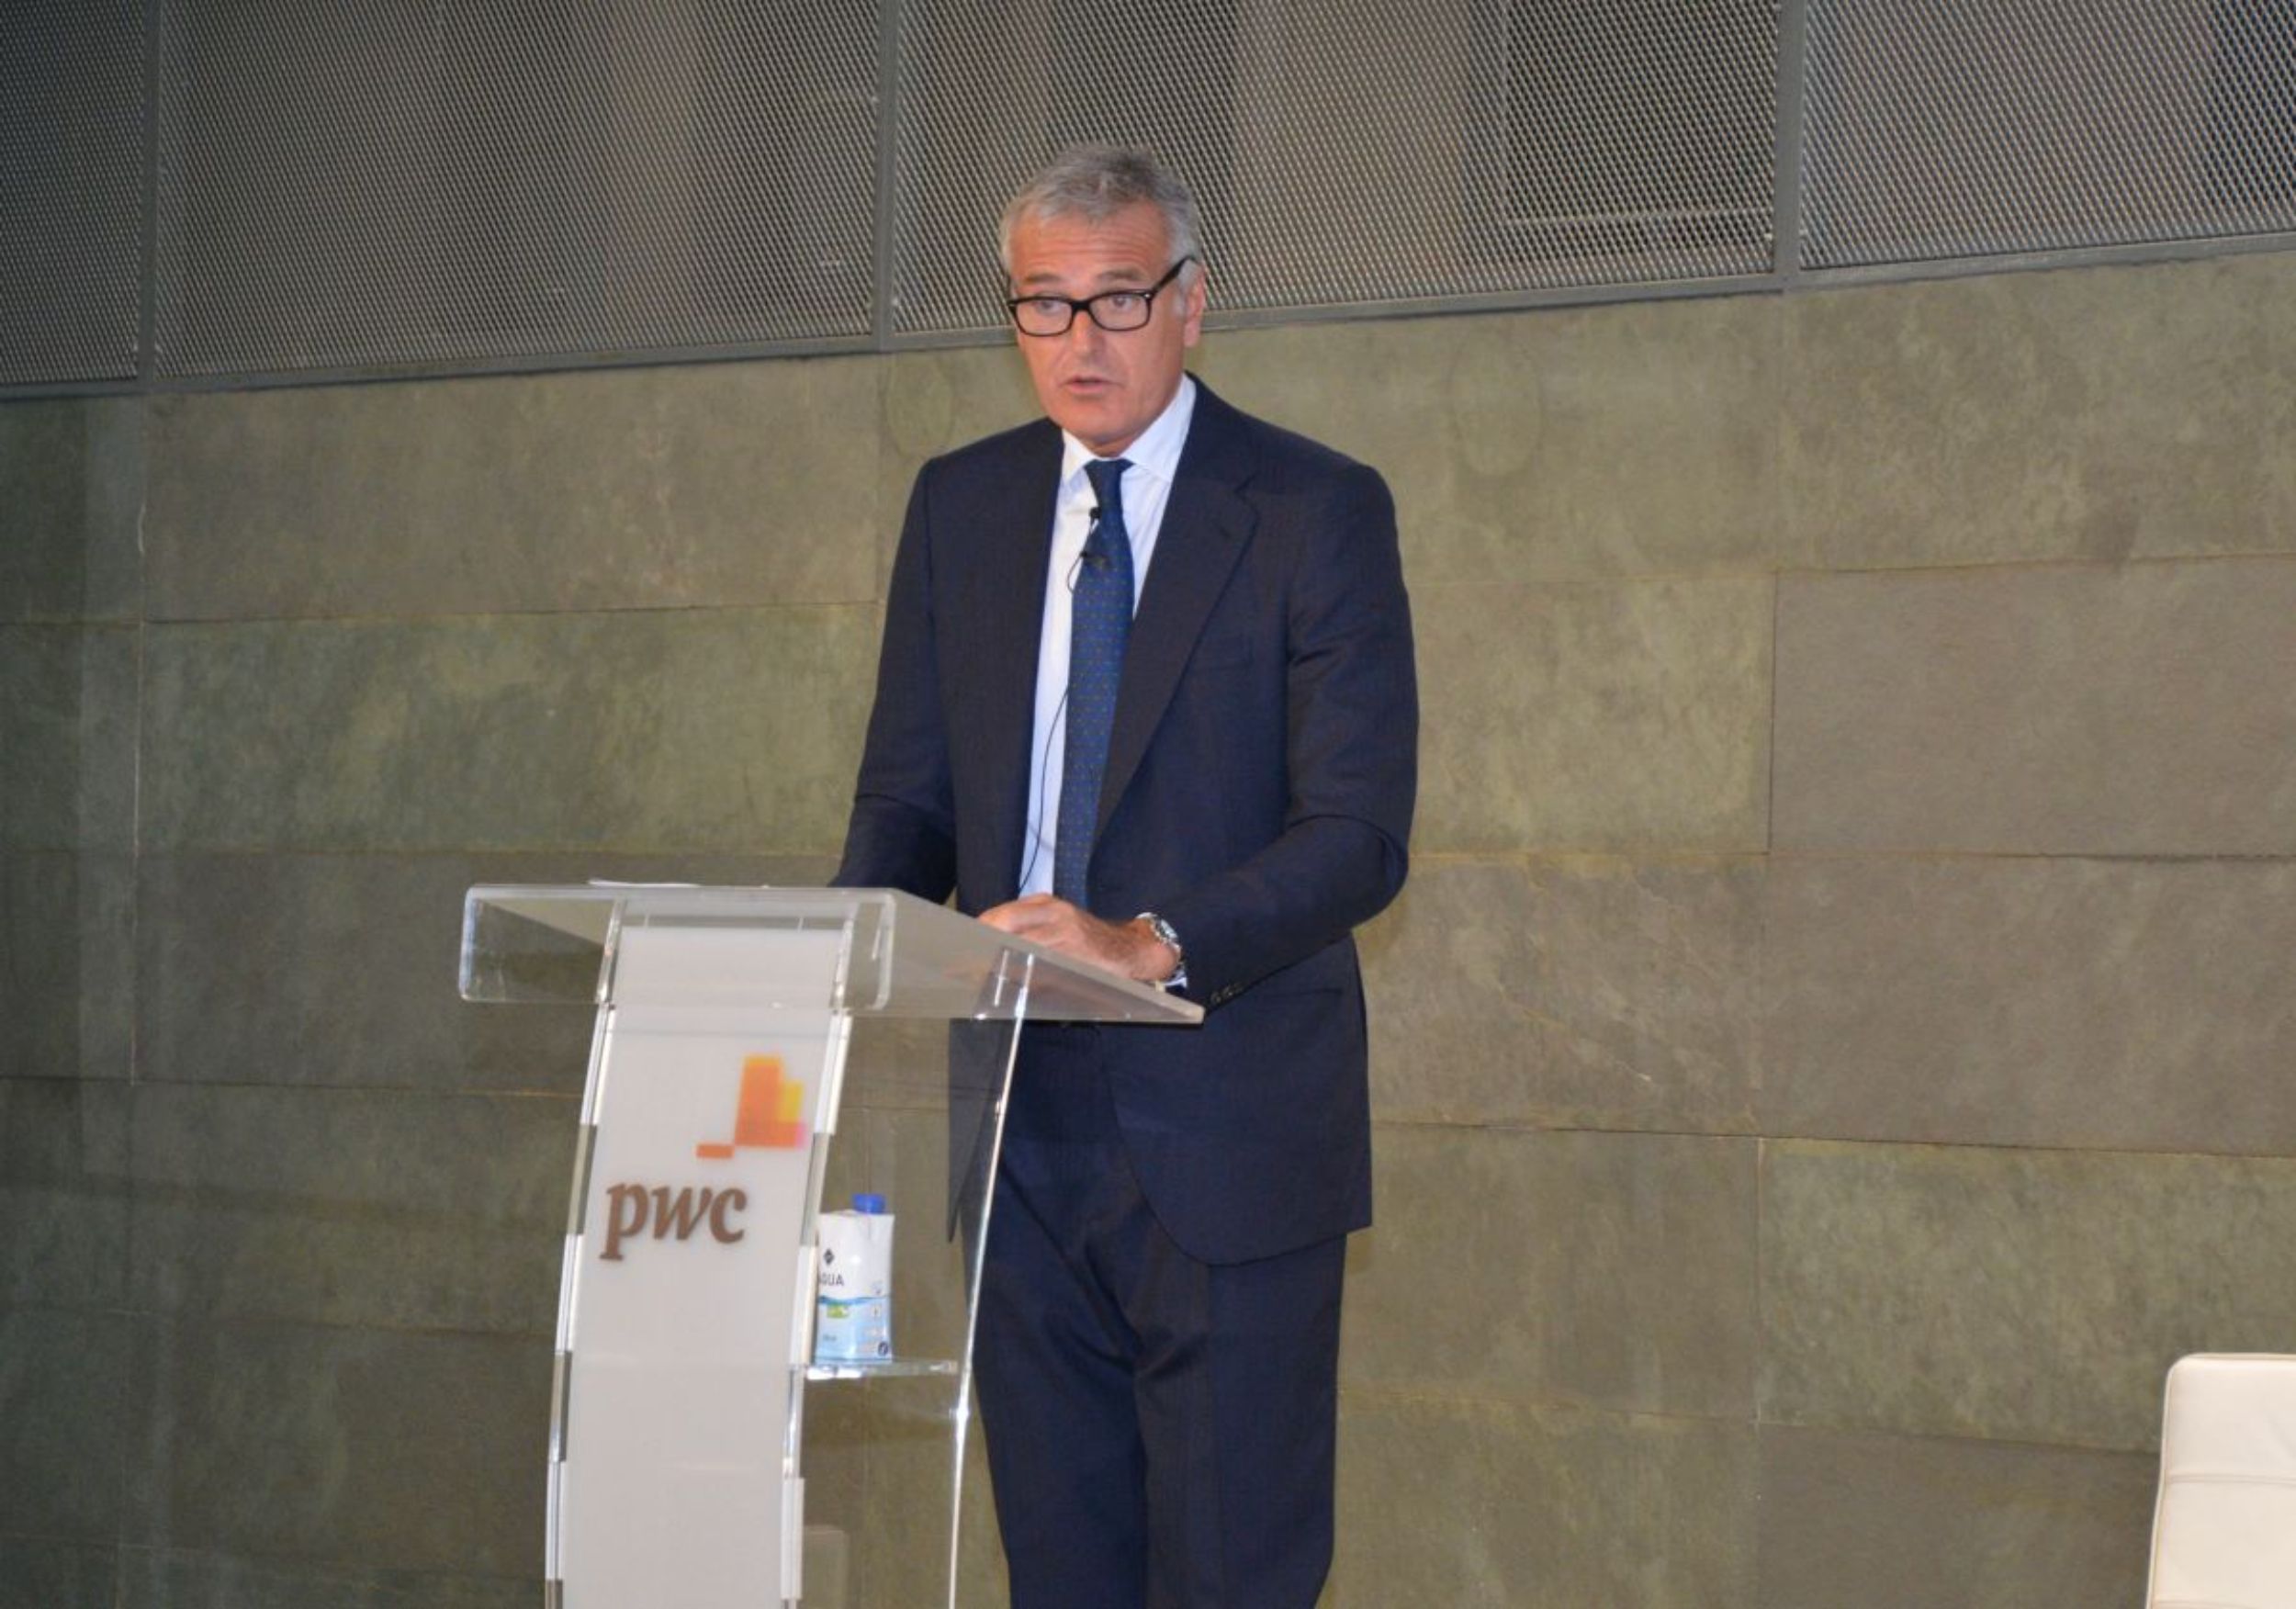 Gonzalo Sánchez, presidente de PwC: “El talento es el gran activo que permitirá competir"